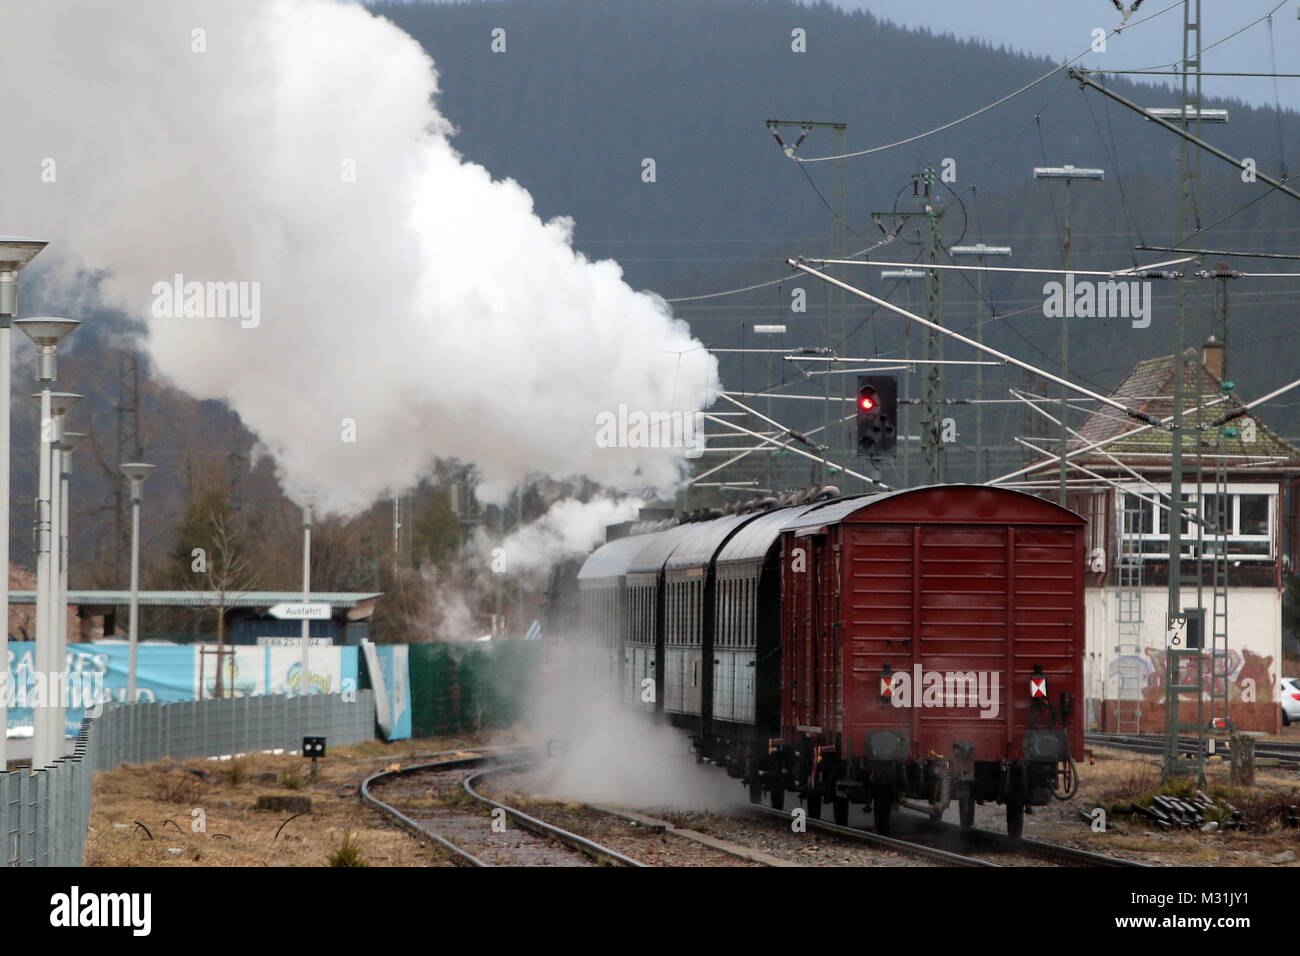 Und Tschüß: Der historische Dampfzug verlässt den Bahnhof Titisee mit einer großen Rauchwolke - Feldberg - Jubiläum - 125 Jahre Skilauf im Schwarzwald Stock Photo